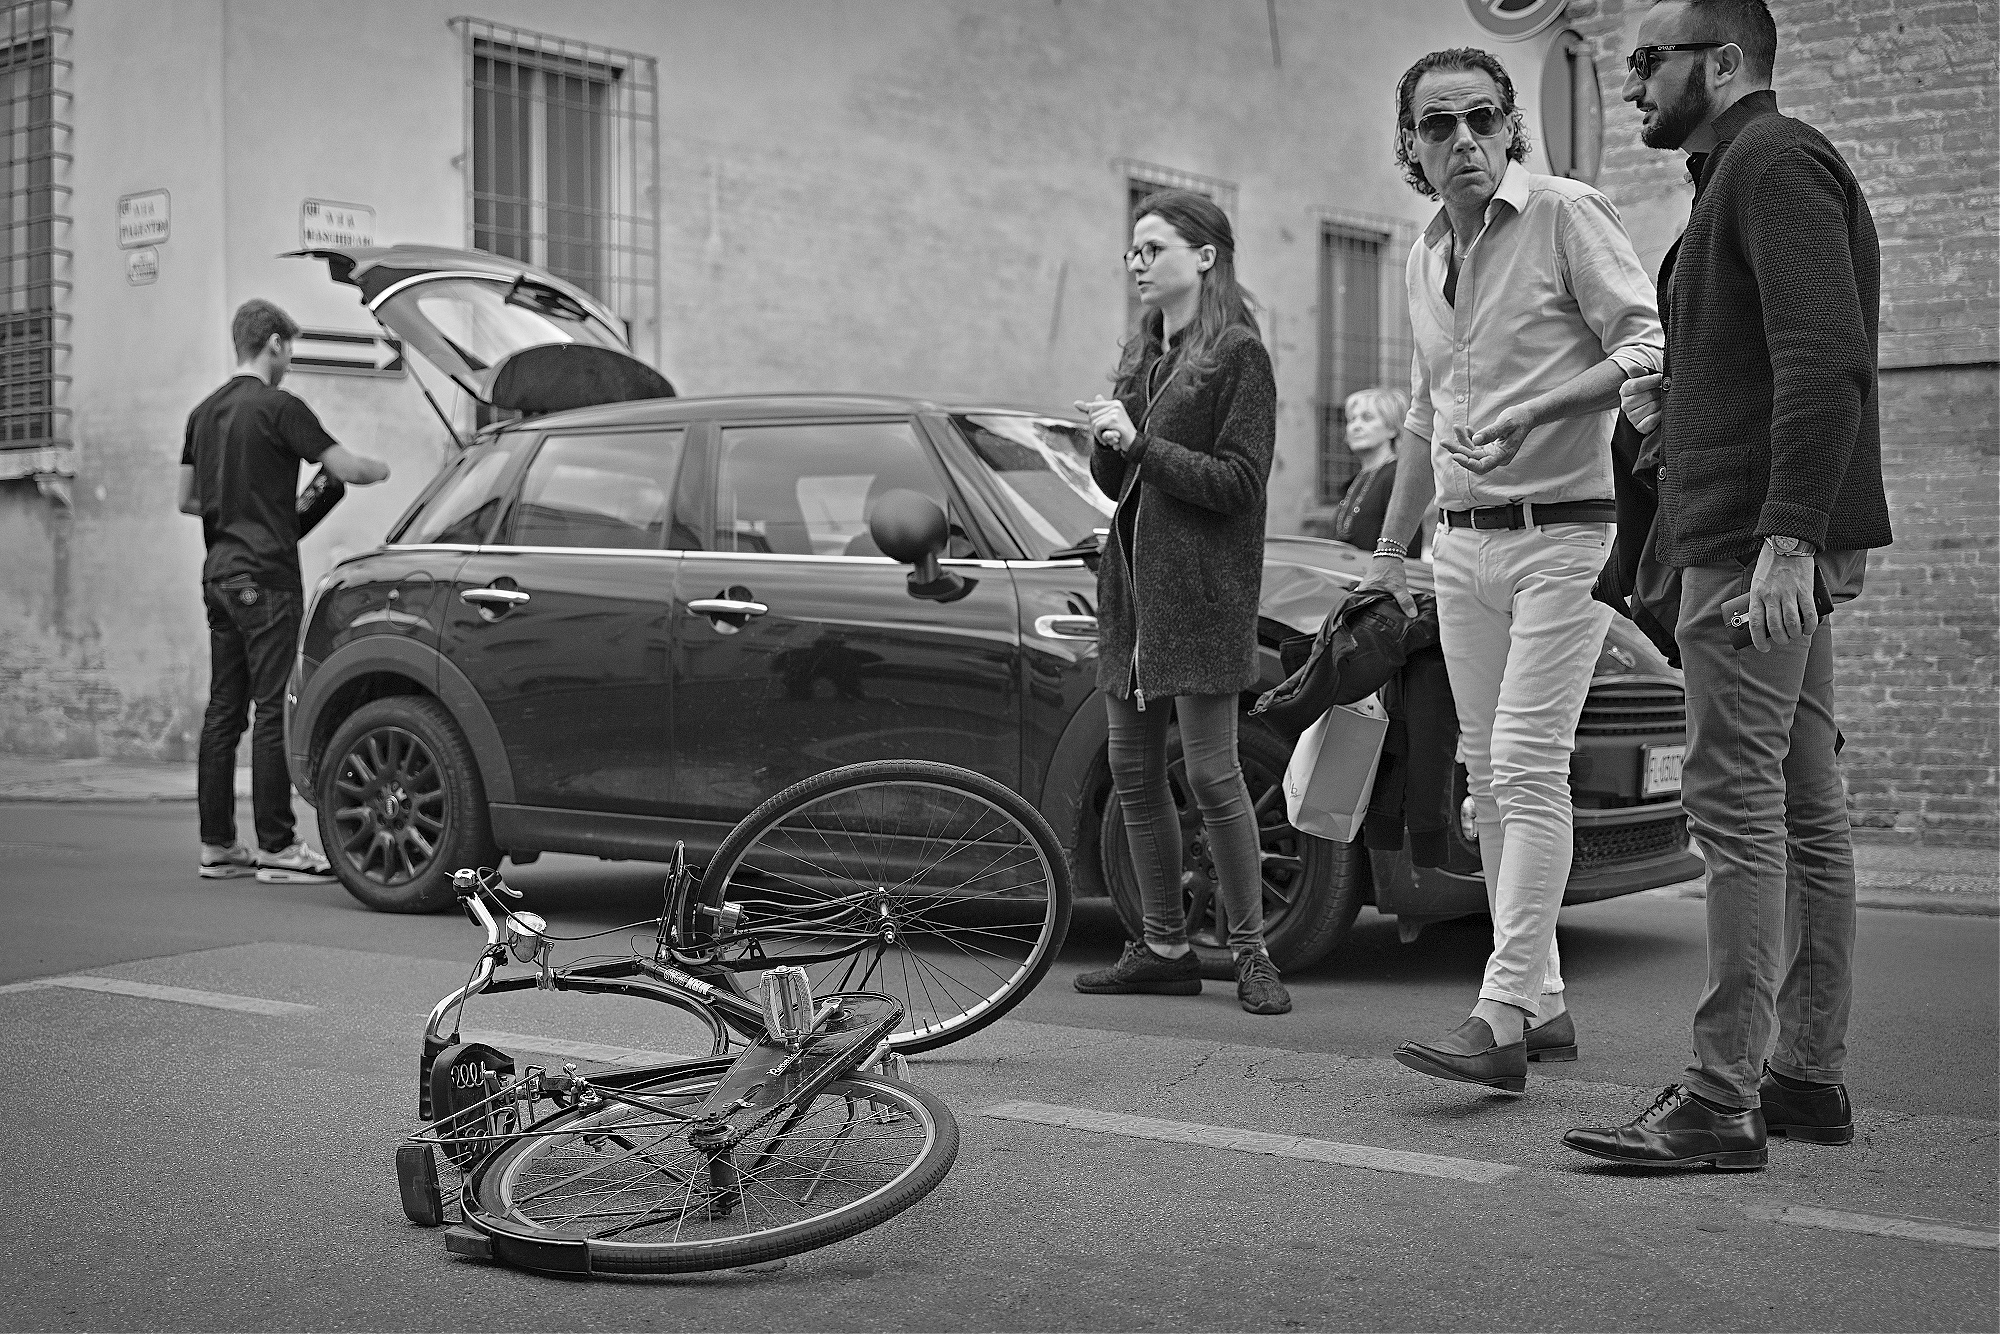 Cycling fatality, Ferrara